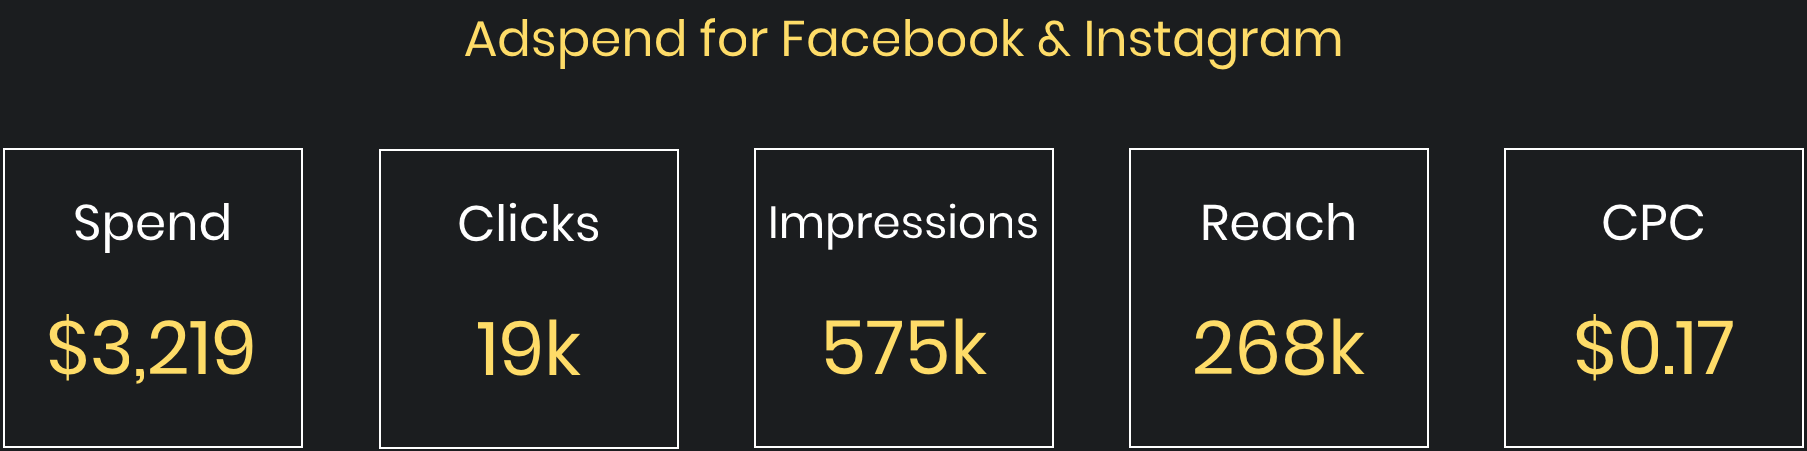 Digital Marketing in Fort Lauderdale Inspire Me Bracelets Infographics Adspend for Facebook and Instagram